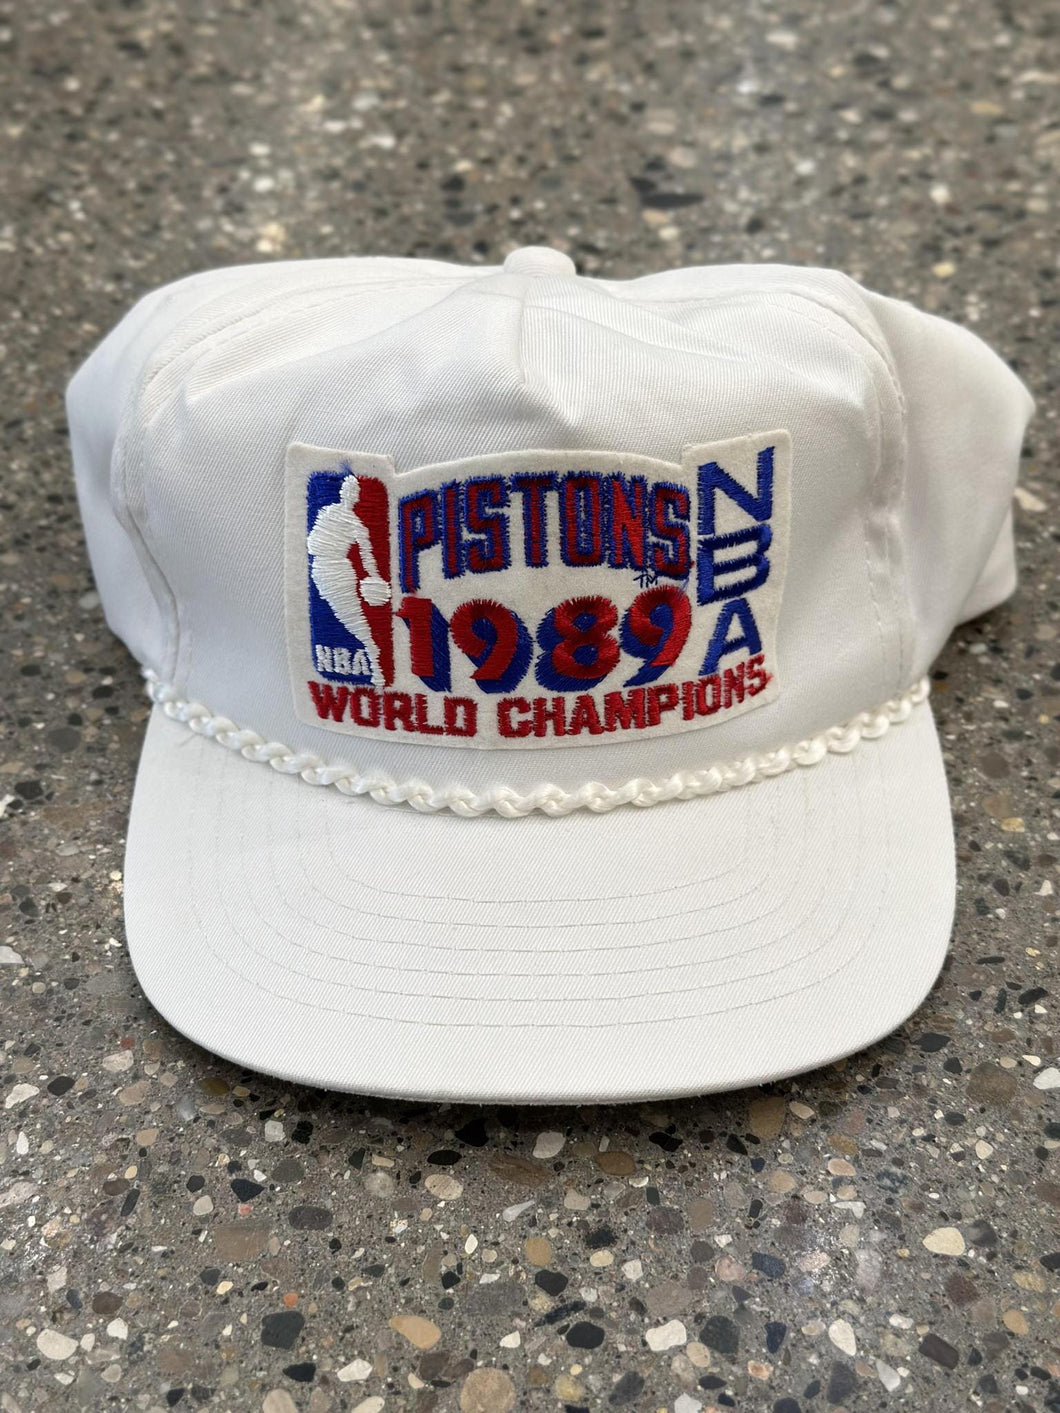 Detroit Pistons Vintage 1989 World Champions Patch Hat White ABC Vintage 